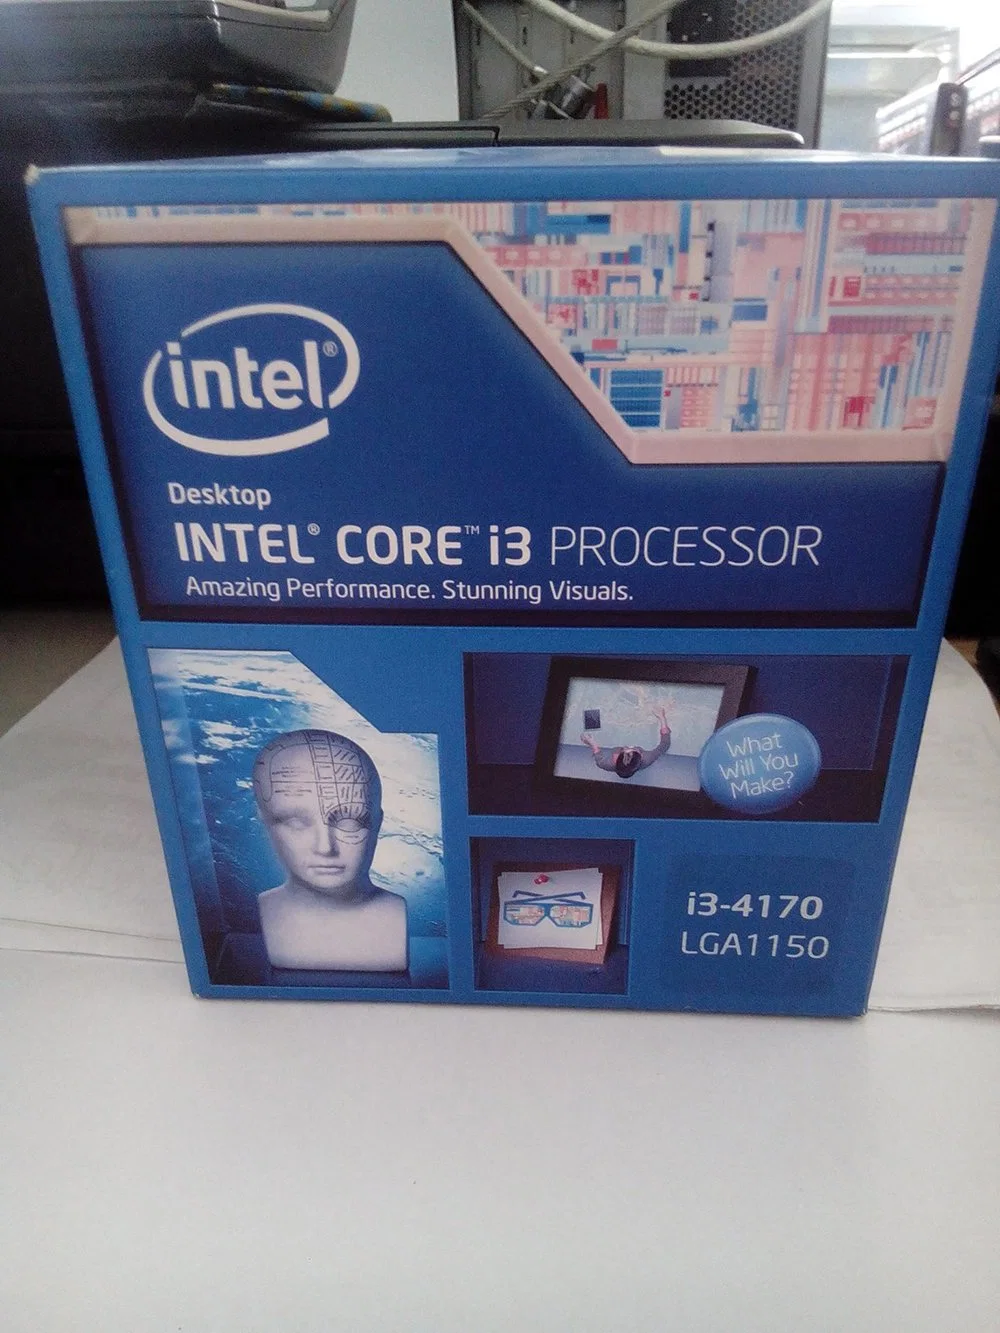 Процессор Intel Core i3 4170 процессор для настольных ПК 2 ядер процессора 3,7 Ггц в корпусе LGA1150 ЦП компьютера